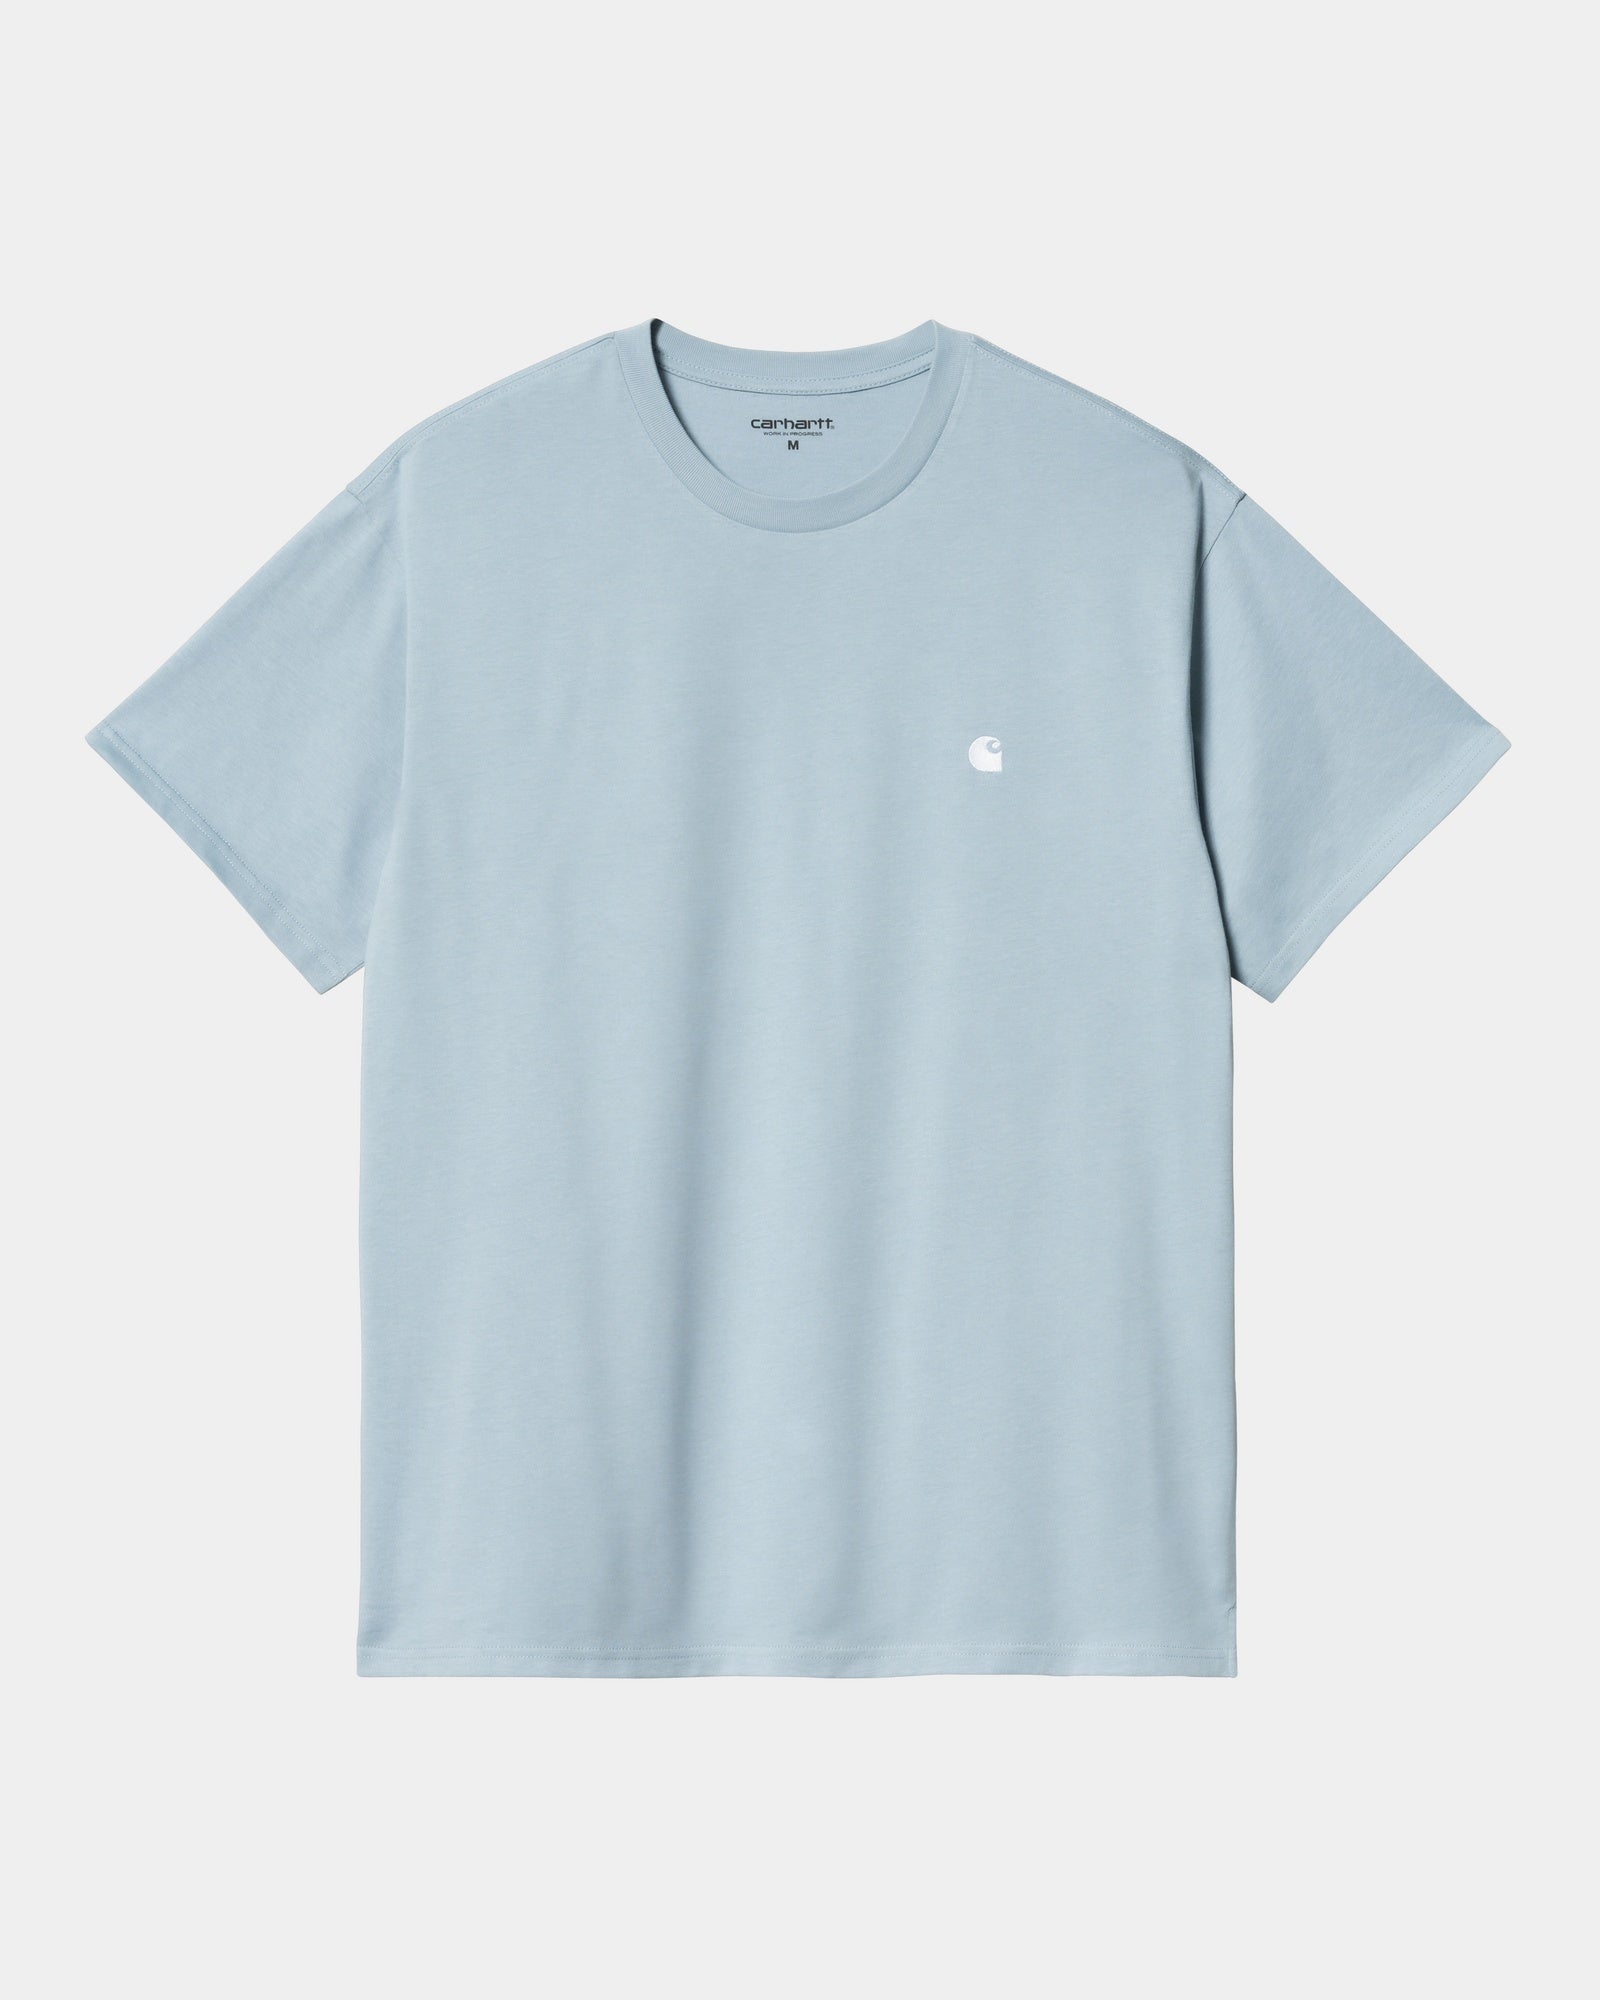 칼하트WIP Carhartt Madison T-Shirt,Frosted Blue / White